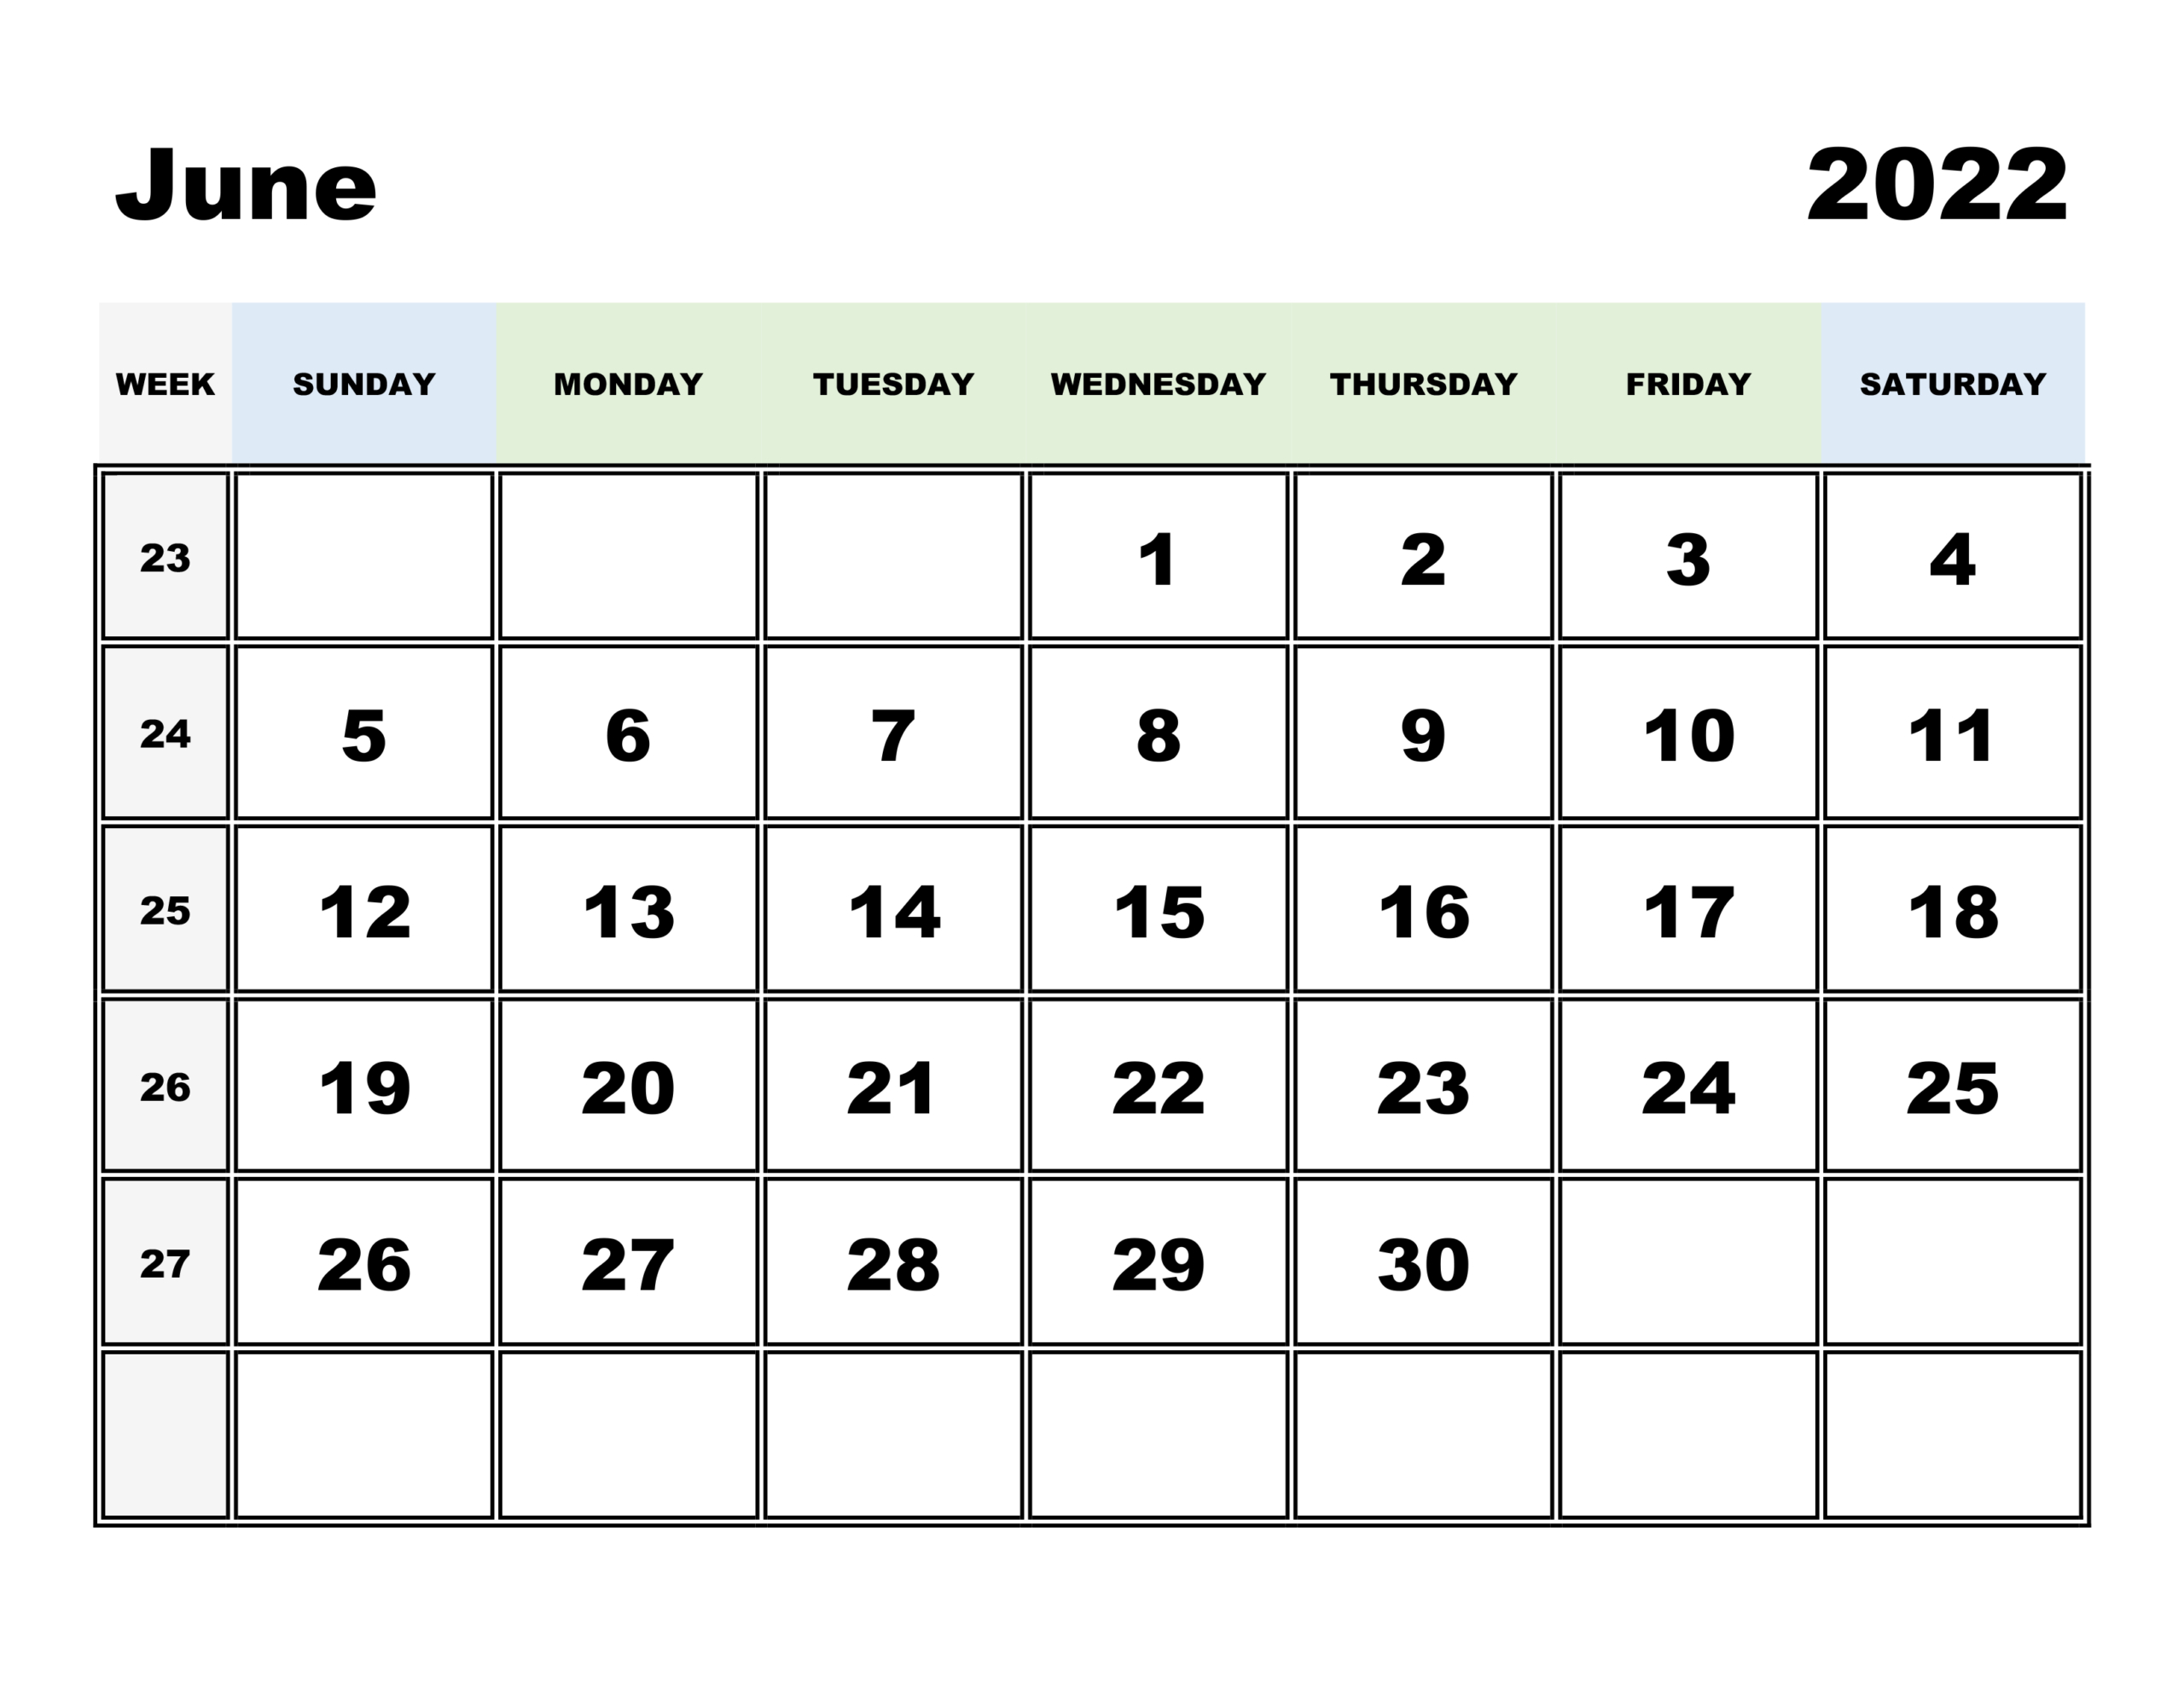 2022 Calendar With Religious Holidays